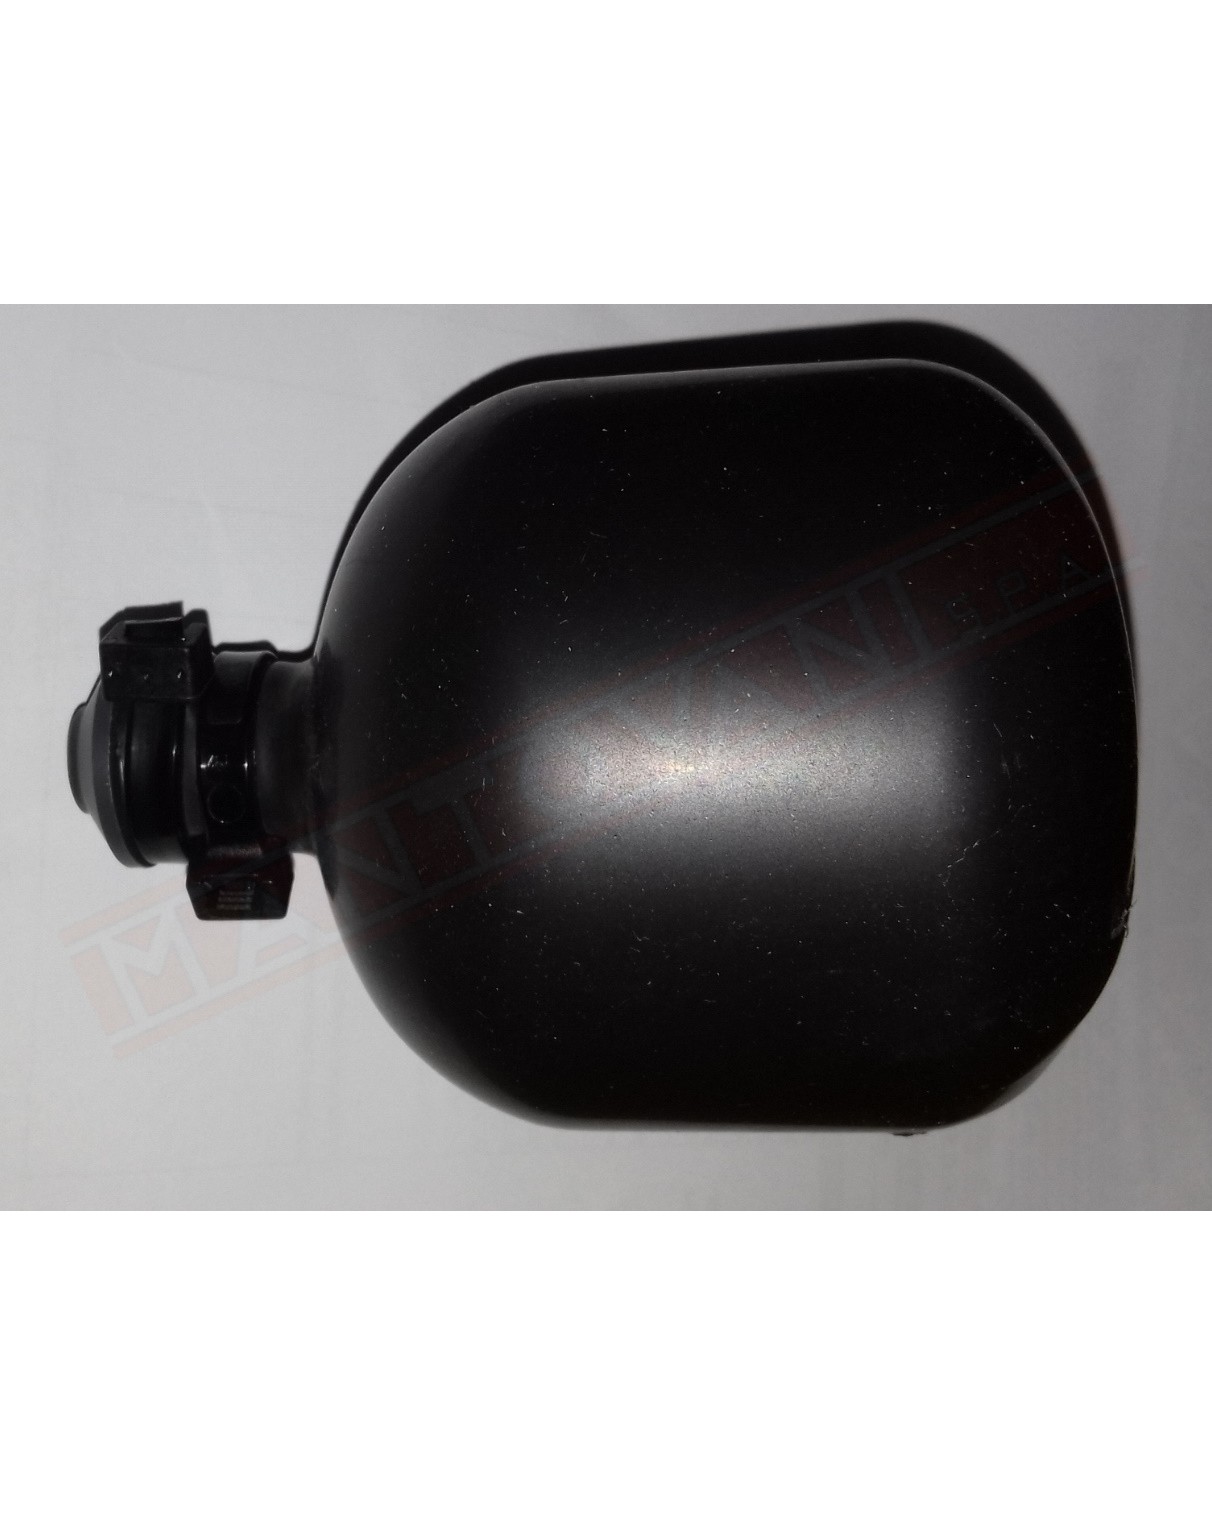 pallone ricambio diametro 110 130 per Kit collaudo impianti con pallone otturattore e pompa manuale per tubi scarico e gas